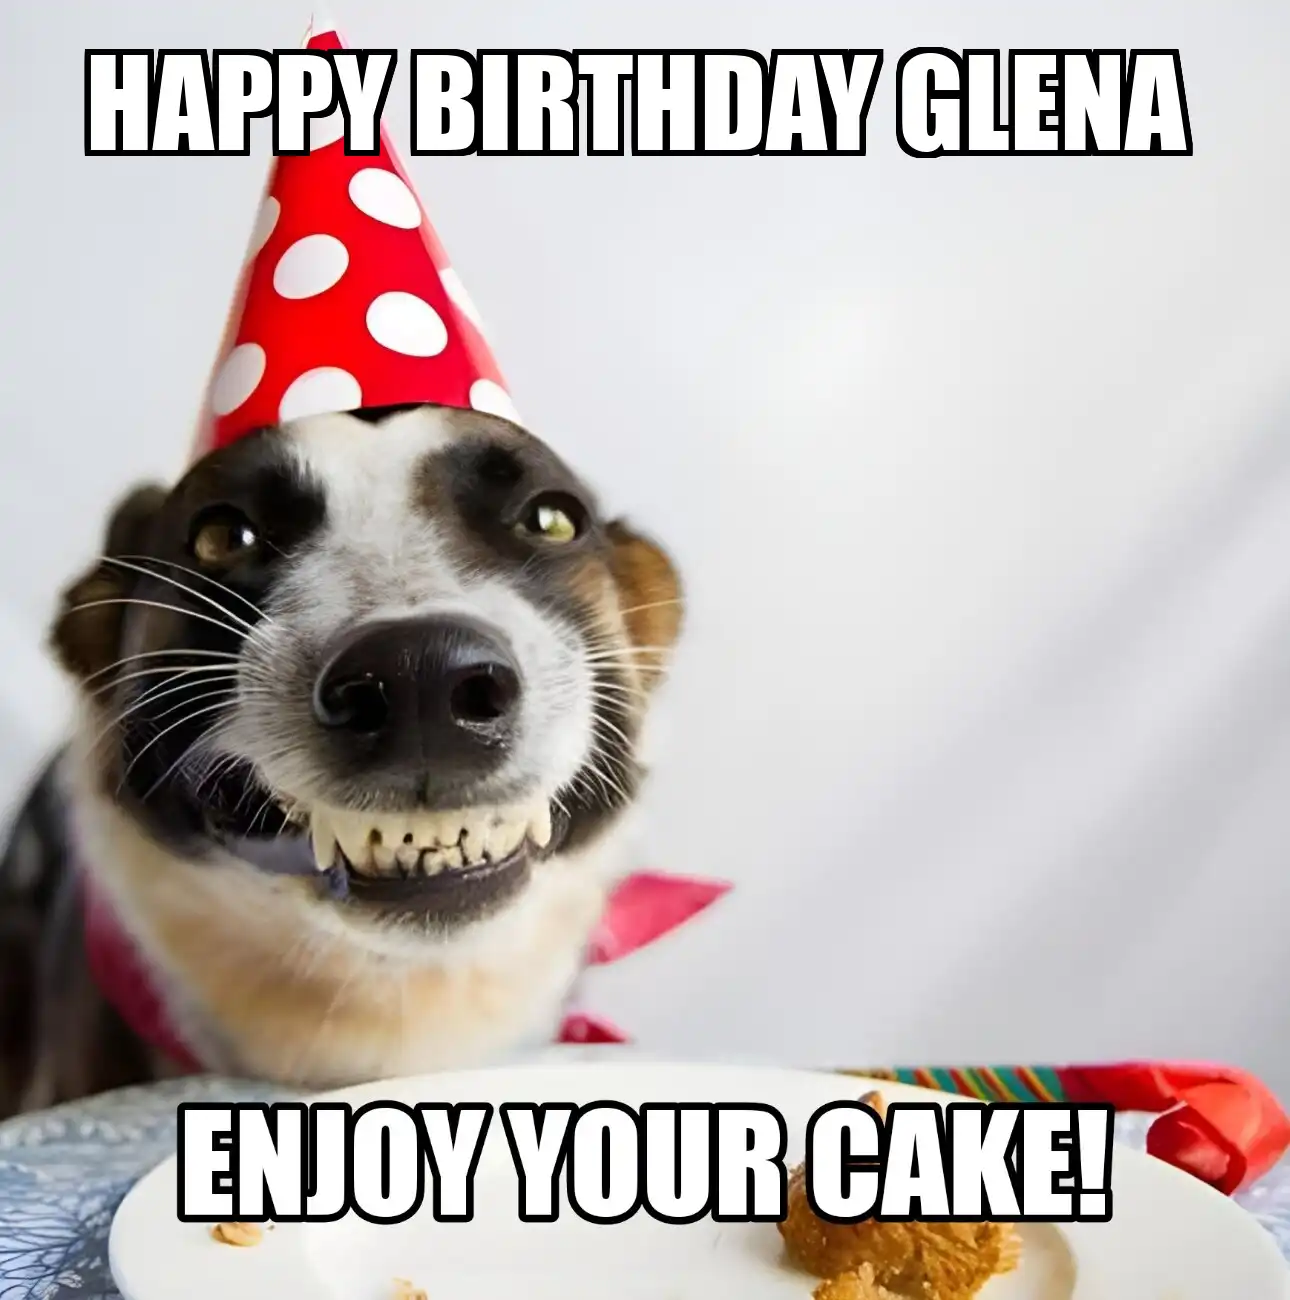 Happy Birthday Glena Enjoy Your Cake Dog Meme